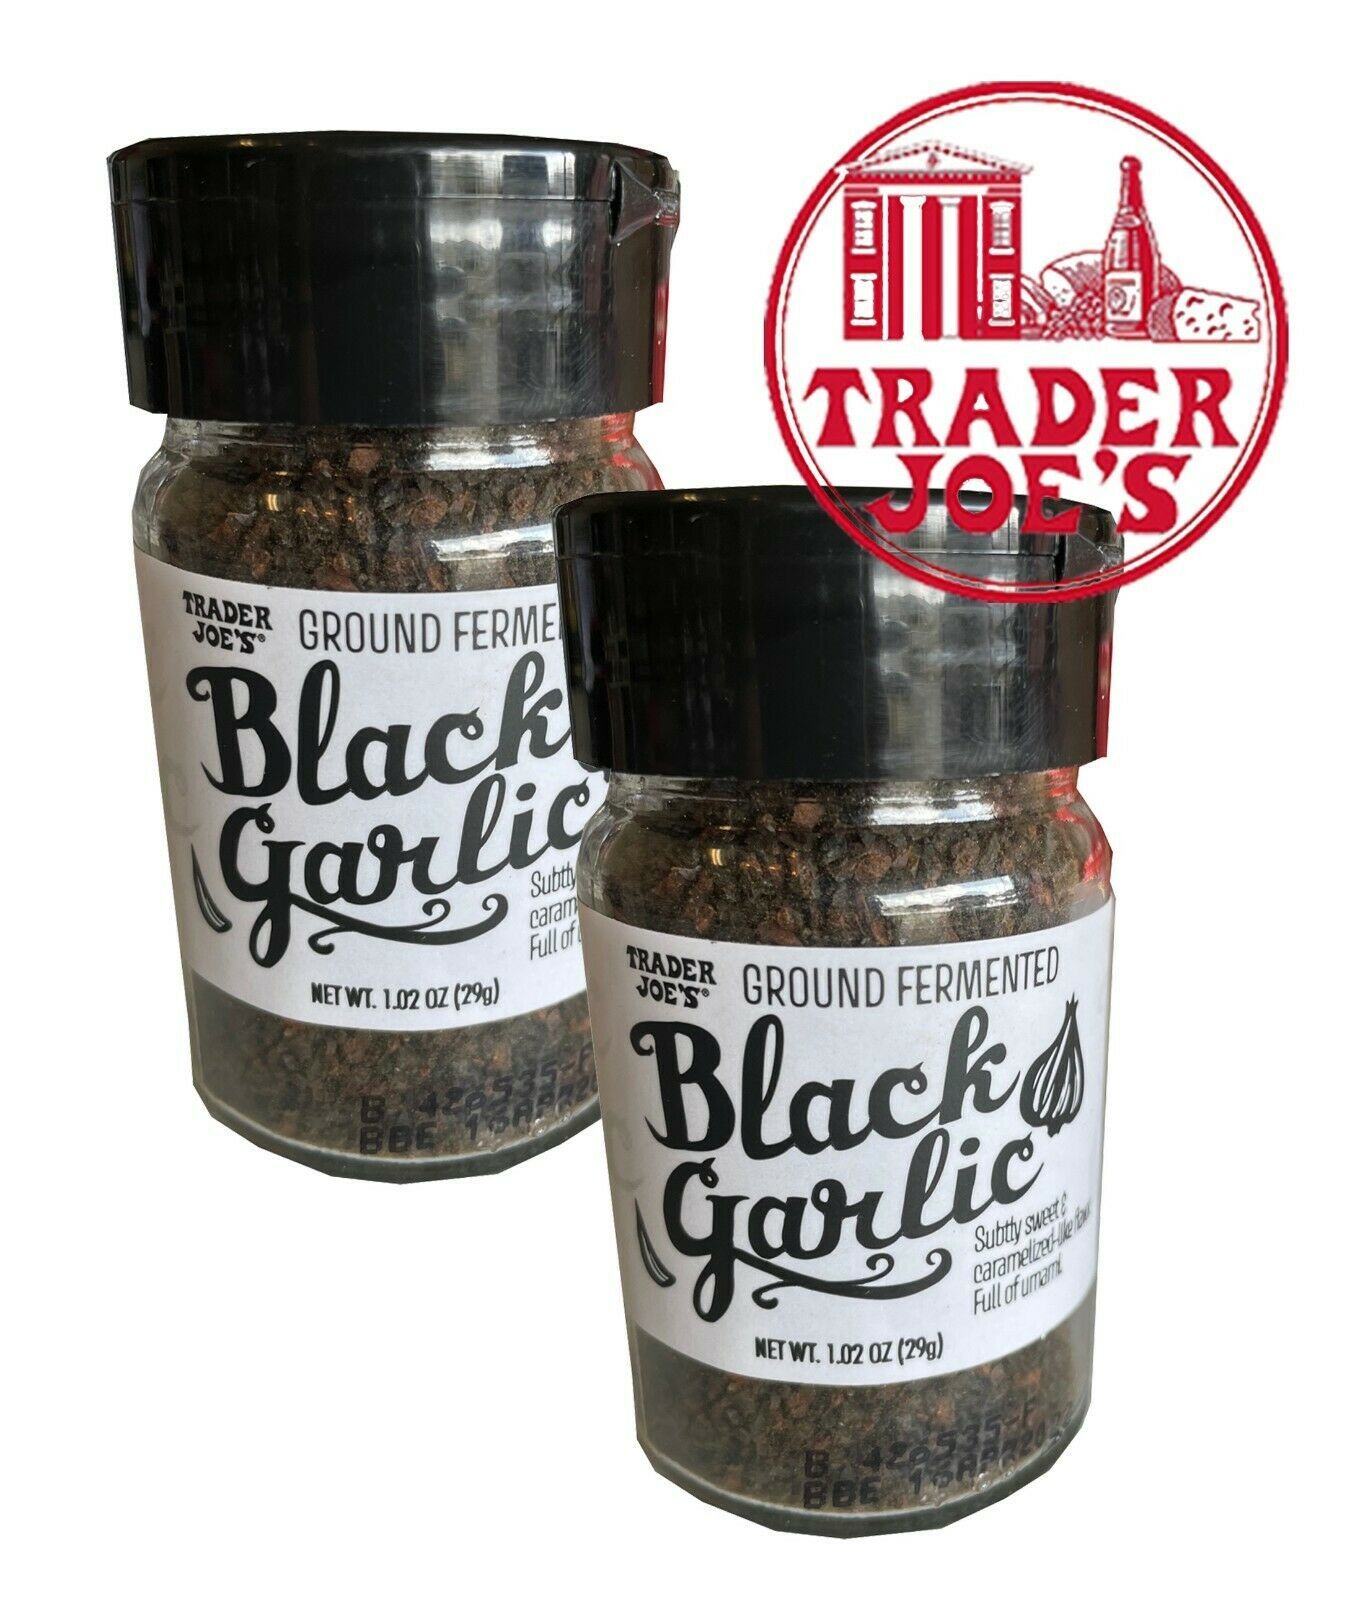 2 Unid.  Trader Joe's Ground Fermented Black Garlic 1.2oz Spice  - $11.30